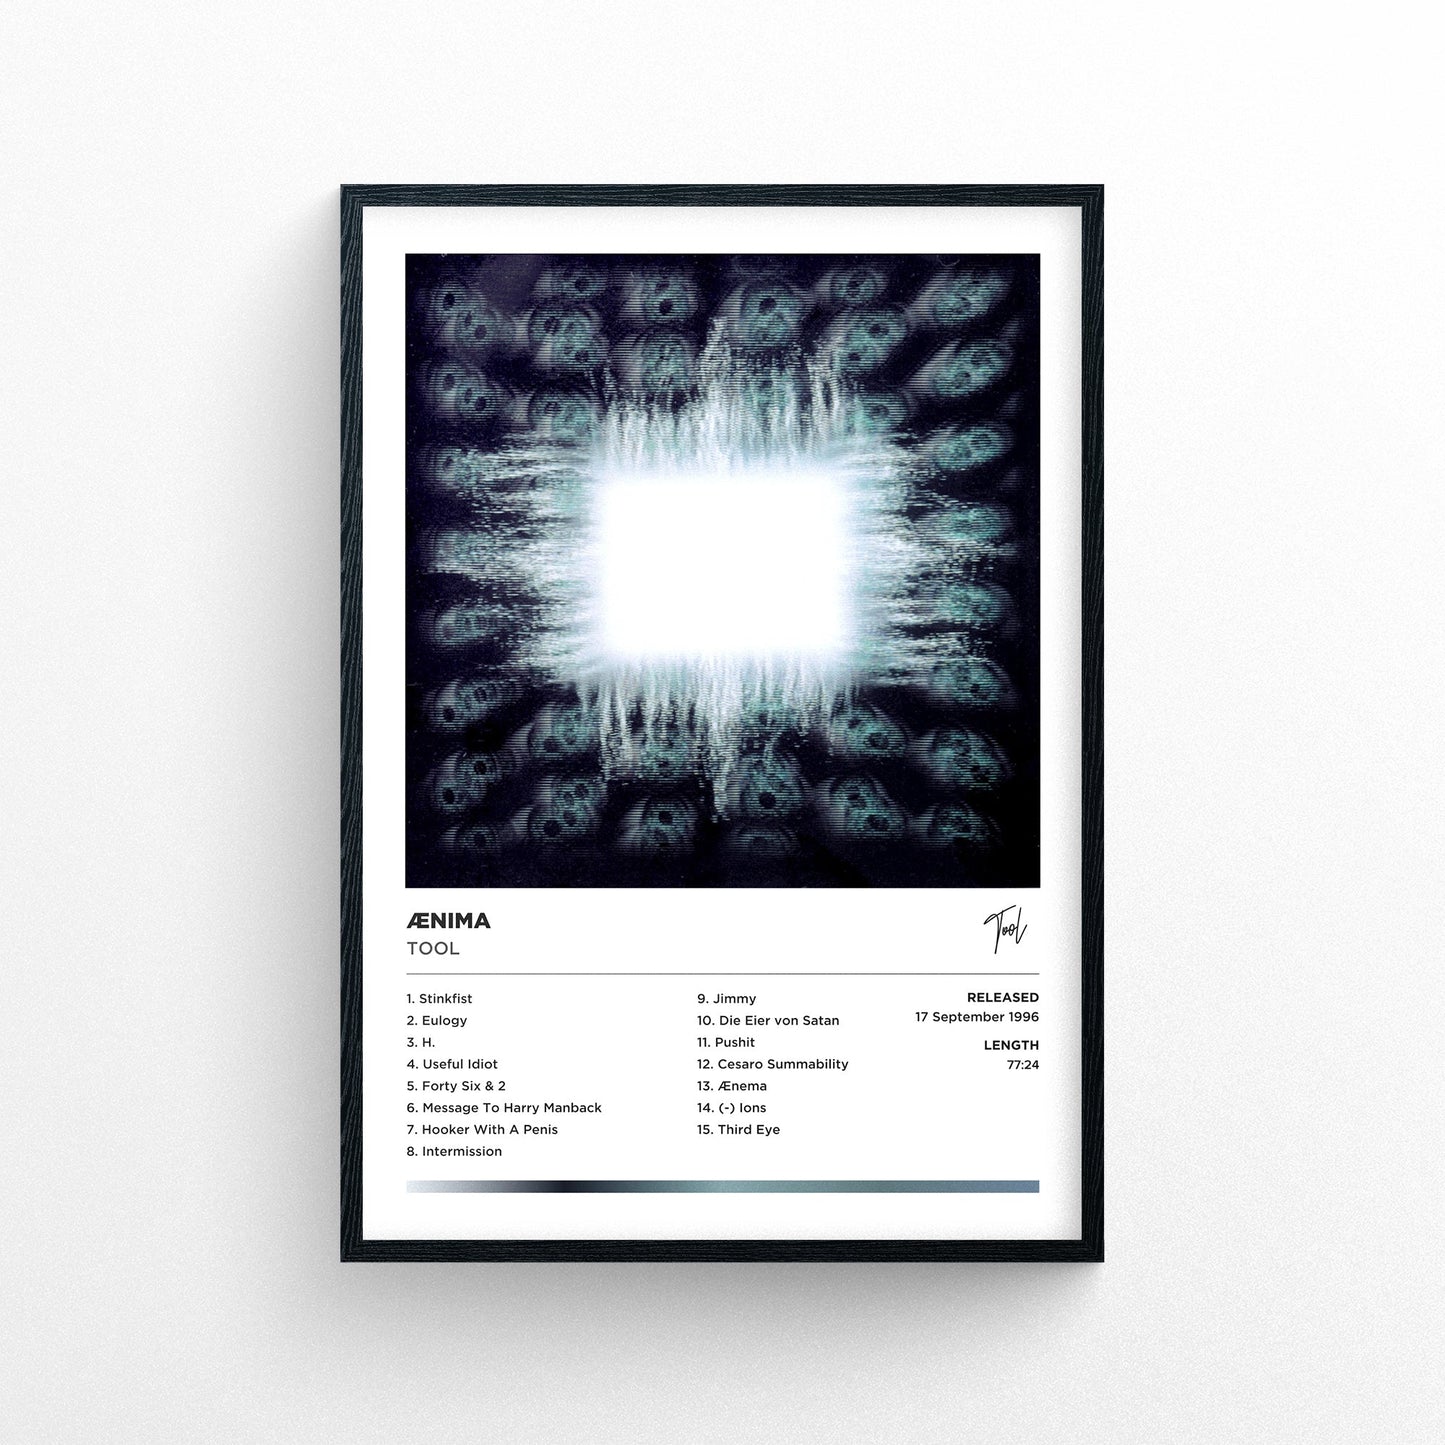 Tool - Aenima Framed Poster Print | Polaroid Style | Album Cover Artwork